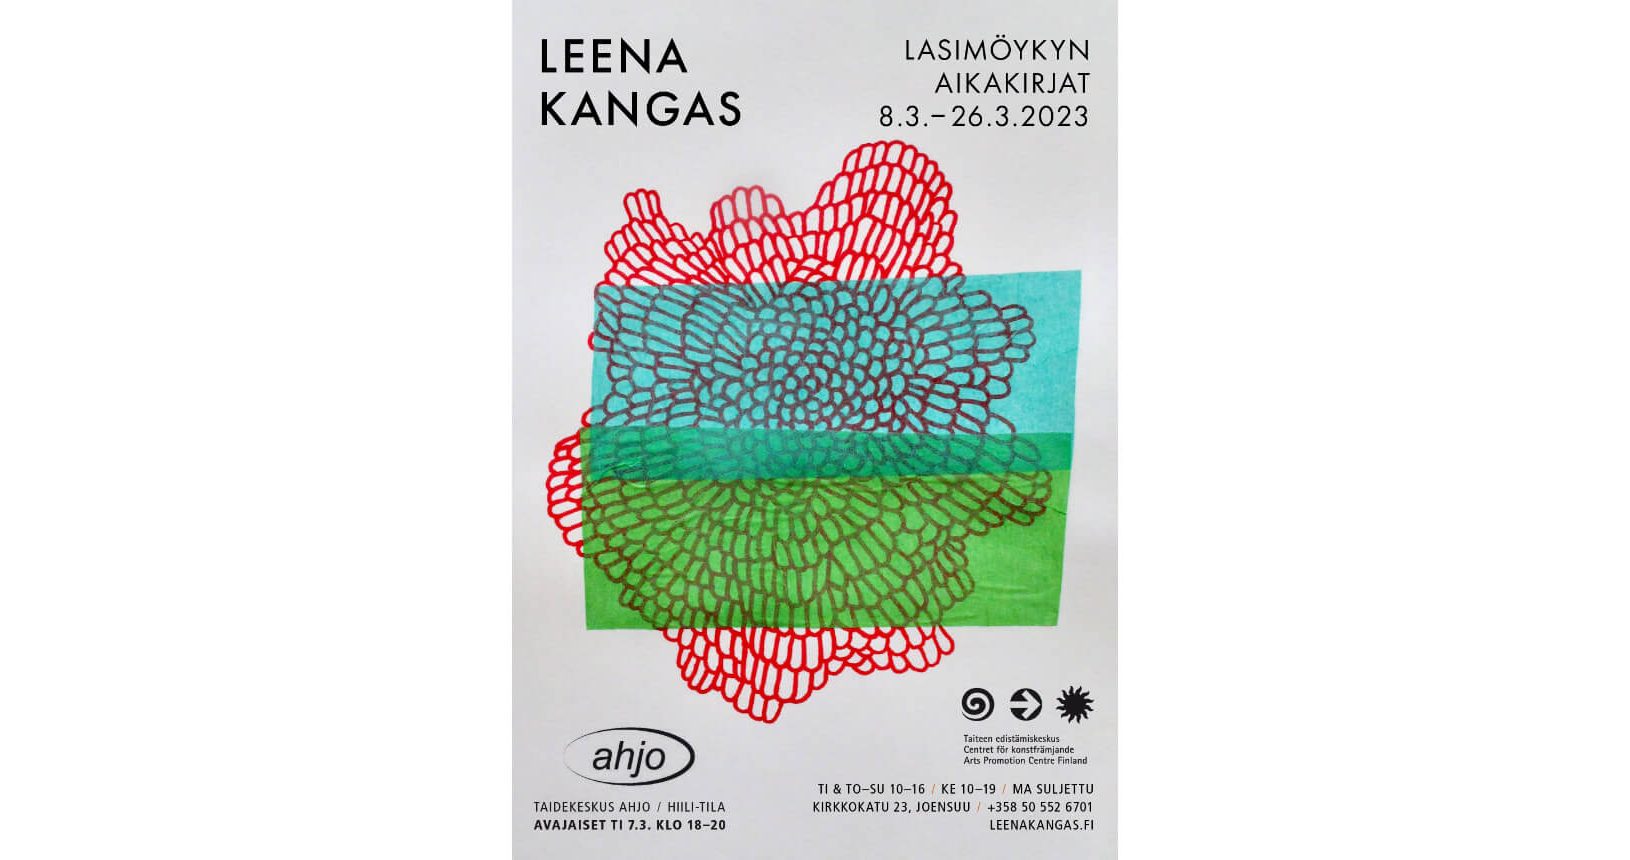 Leena Kangas: Lasimöykyn aikakirjat, Solo exhibition in Art Center Ahjo, Joensuu